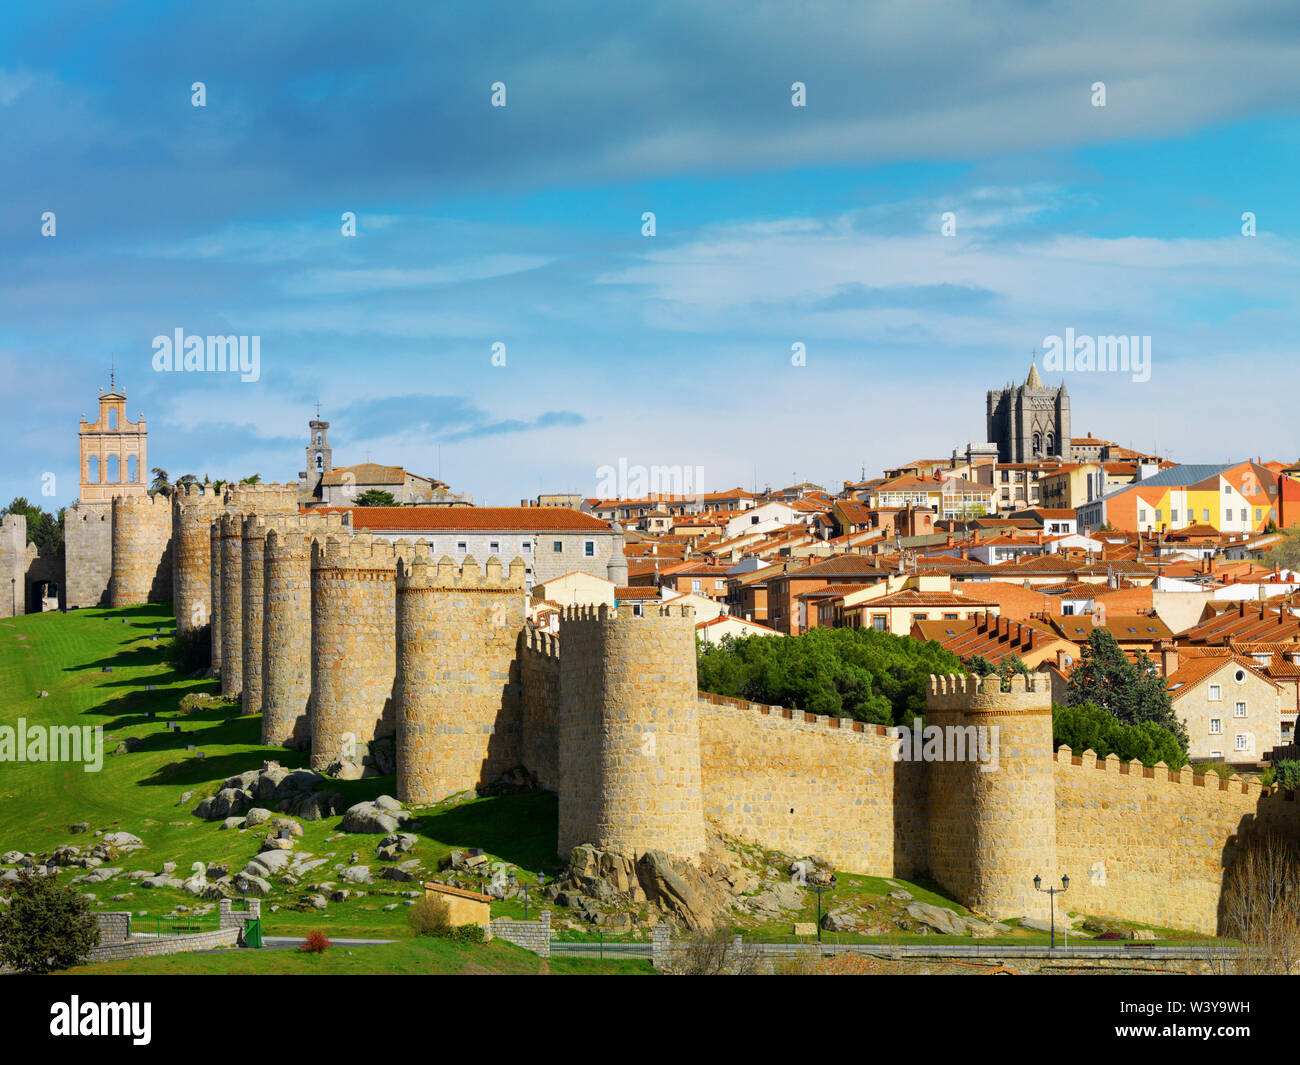 España, Castilla y León, Avila. Las murallas alrededor de la ciudad vieja, catalogada como Patrimonio de la Humanidad por la UNESCO, las murallas de fecha del siglo XII. Foto de stock